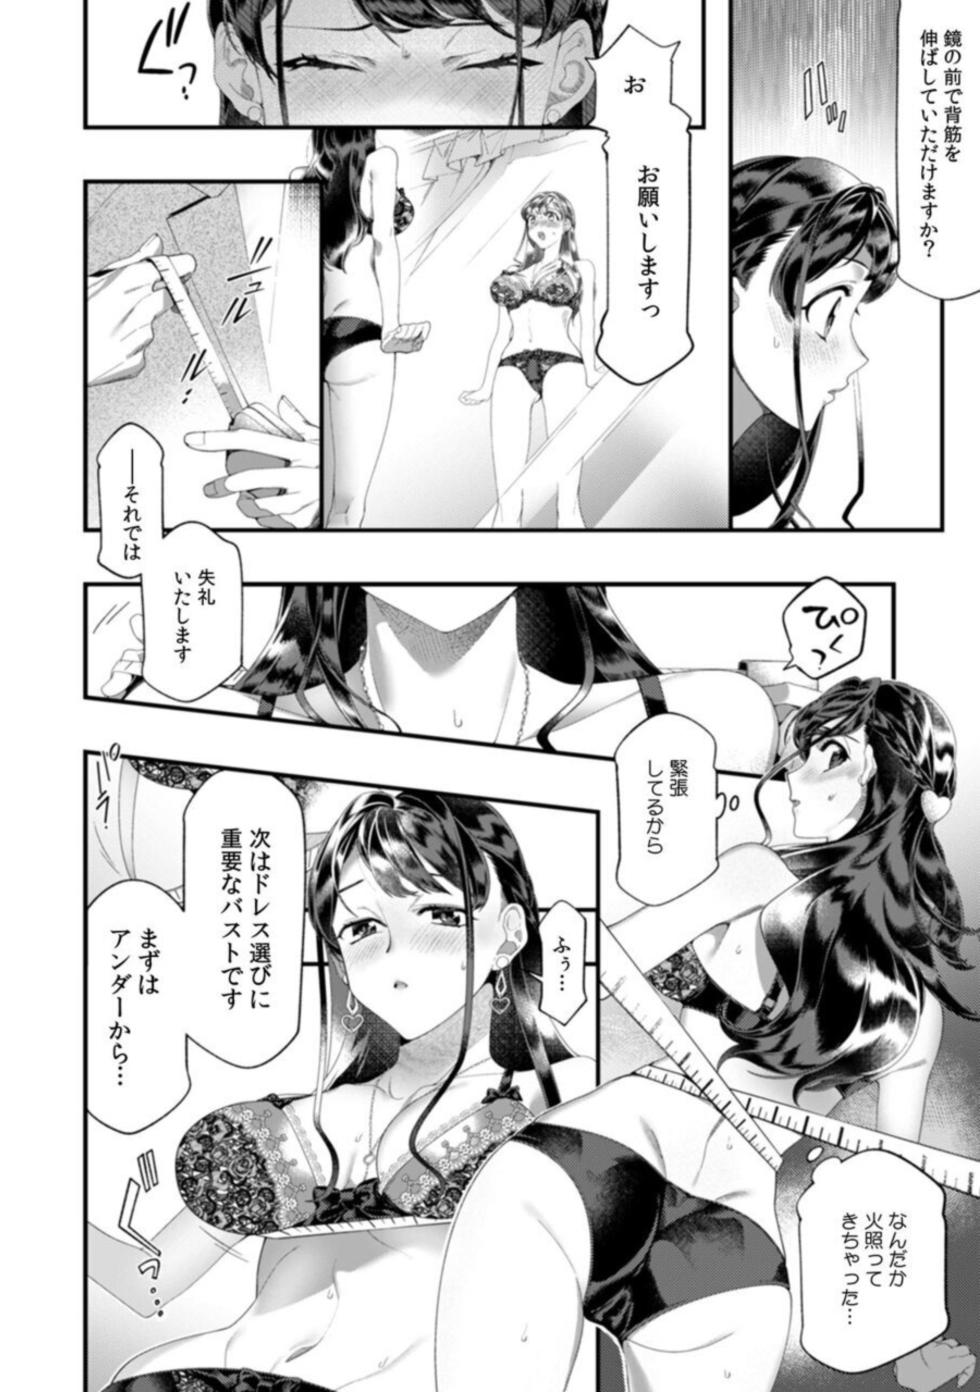 [Nichi Ryū / Hikaru] "Dame, Sore Ijō Fukaku Sōnyūrenaide!" Kekkonshikijō de Otto no Yūjin to fu dōi SEX 1 - Page 12